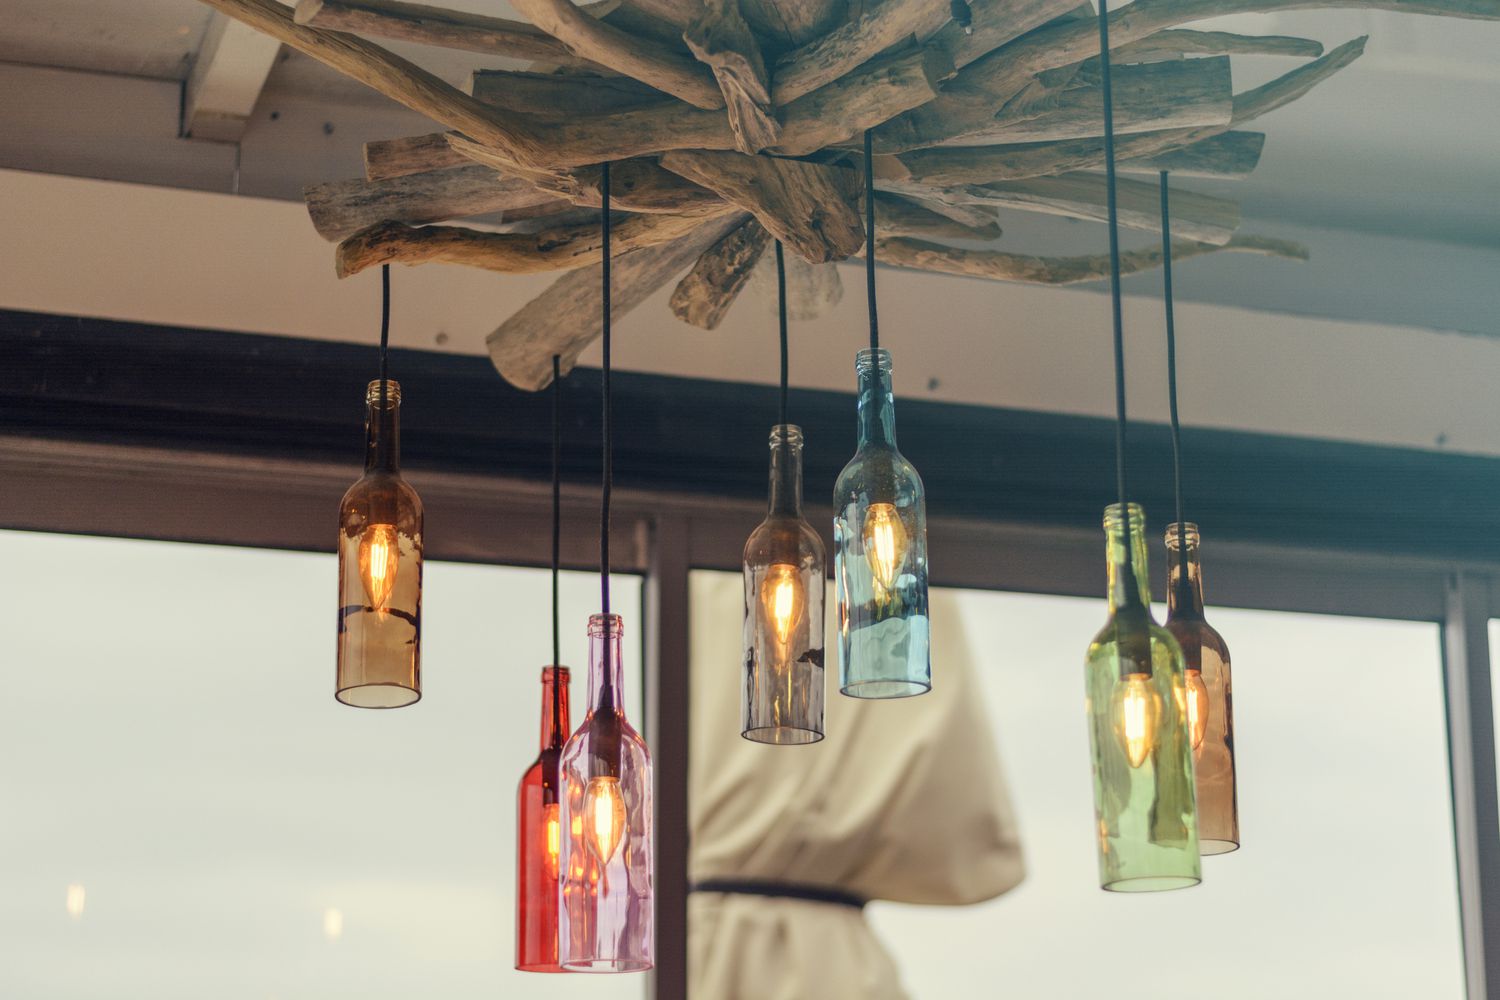 garrafas coloridas com lâmpadas dentro se transformaram em luzes pendentes penduradas em madeira no teto